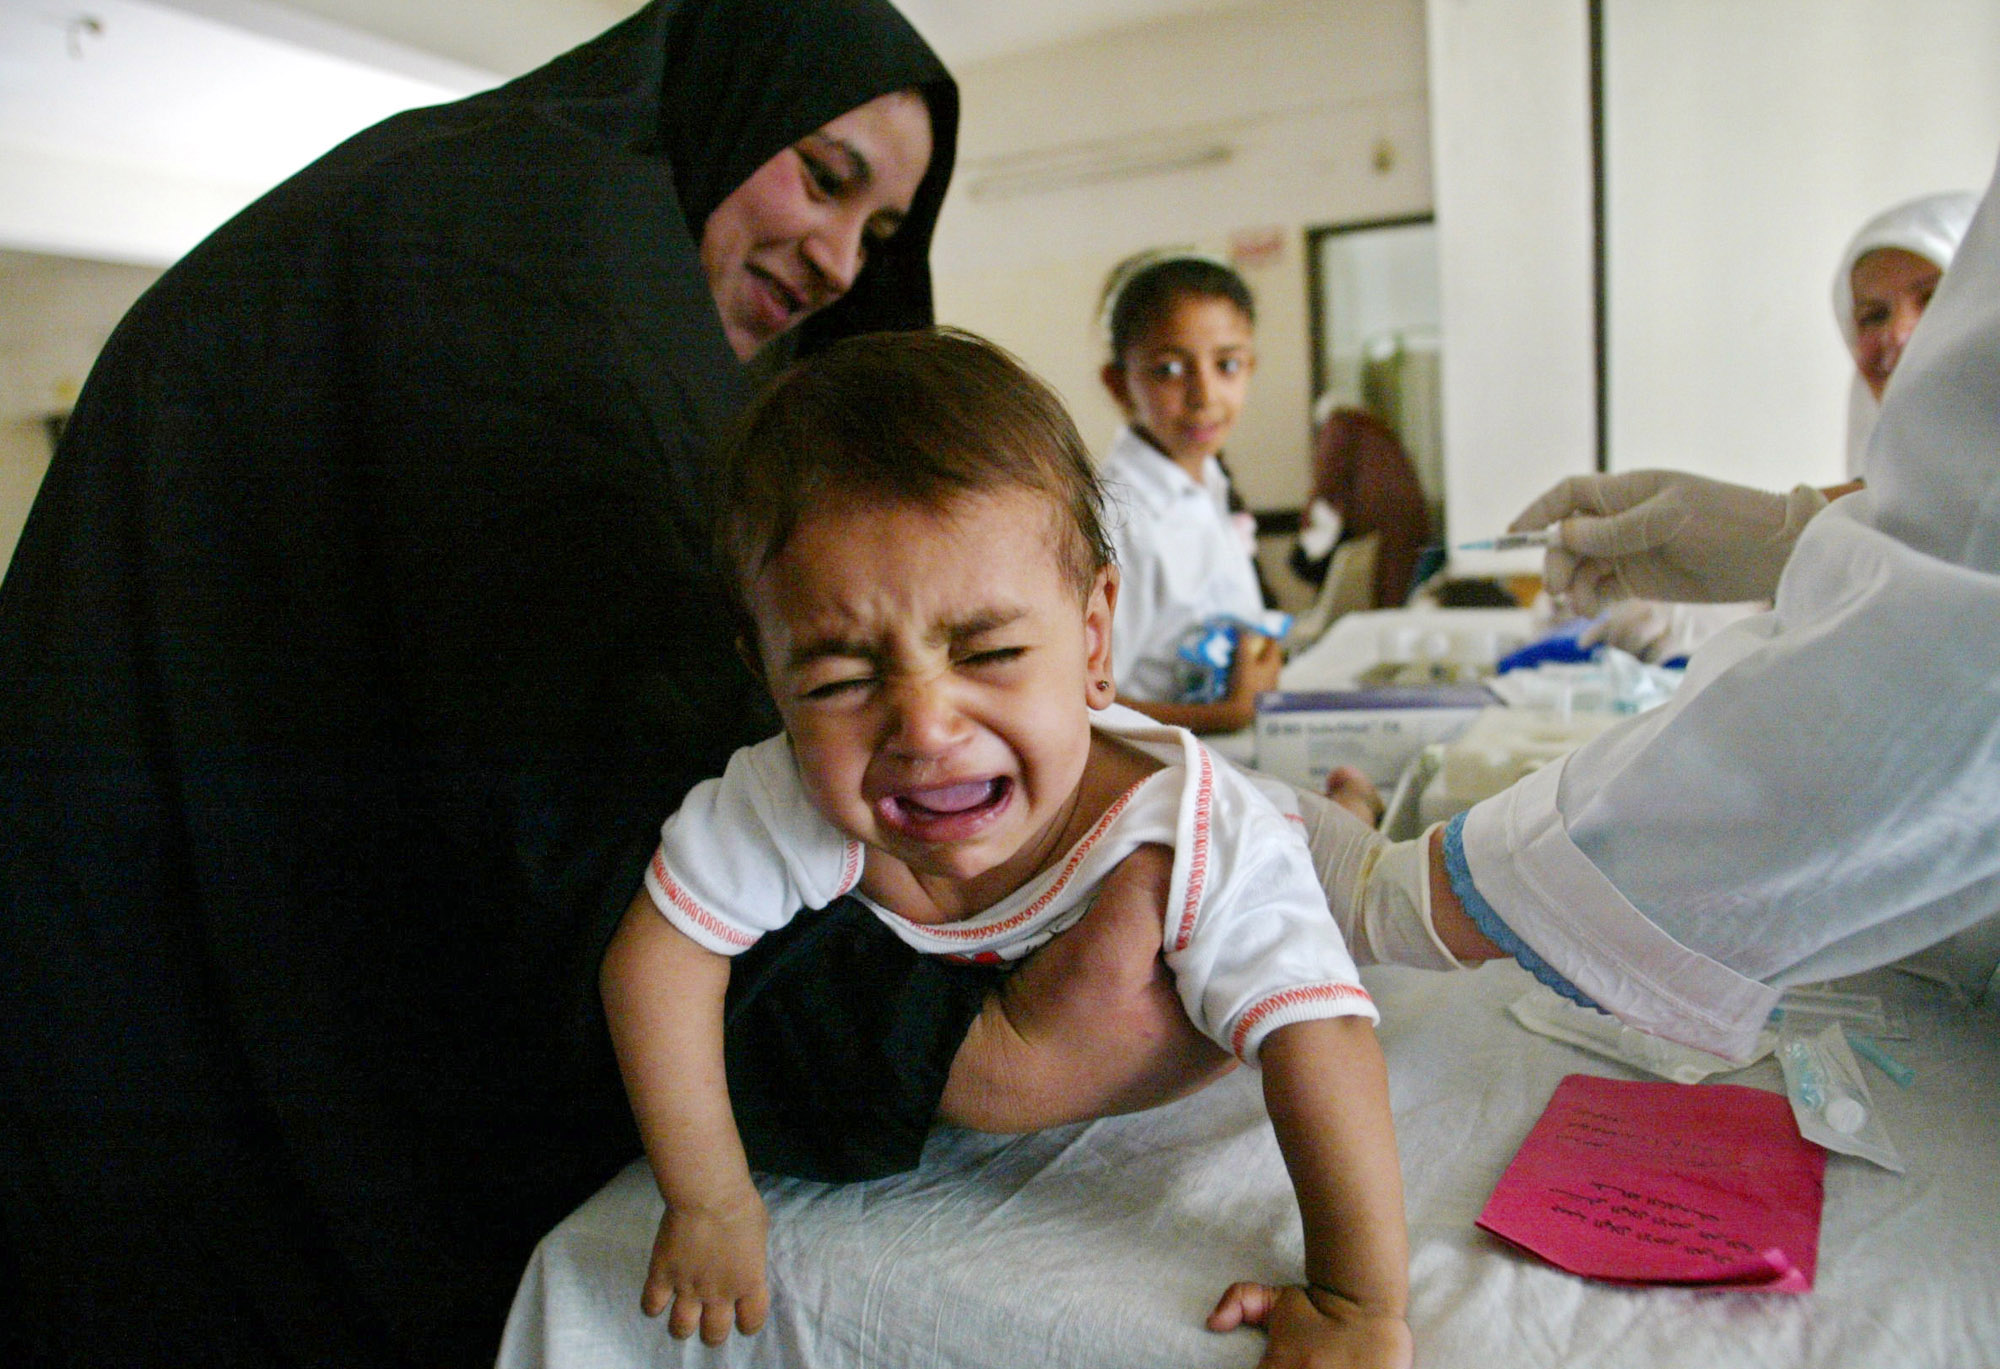 Λιγότερους θανάτους μητέρων και παιδιών το 2010, καταγράφει έκθεση της UNICEF